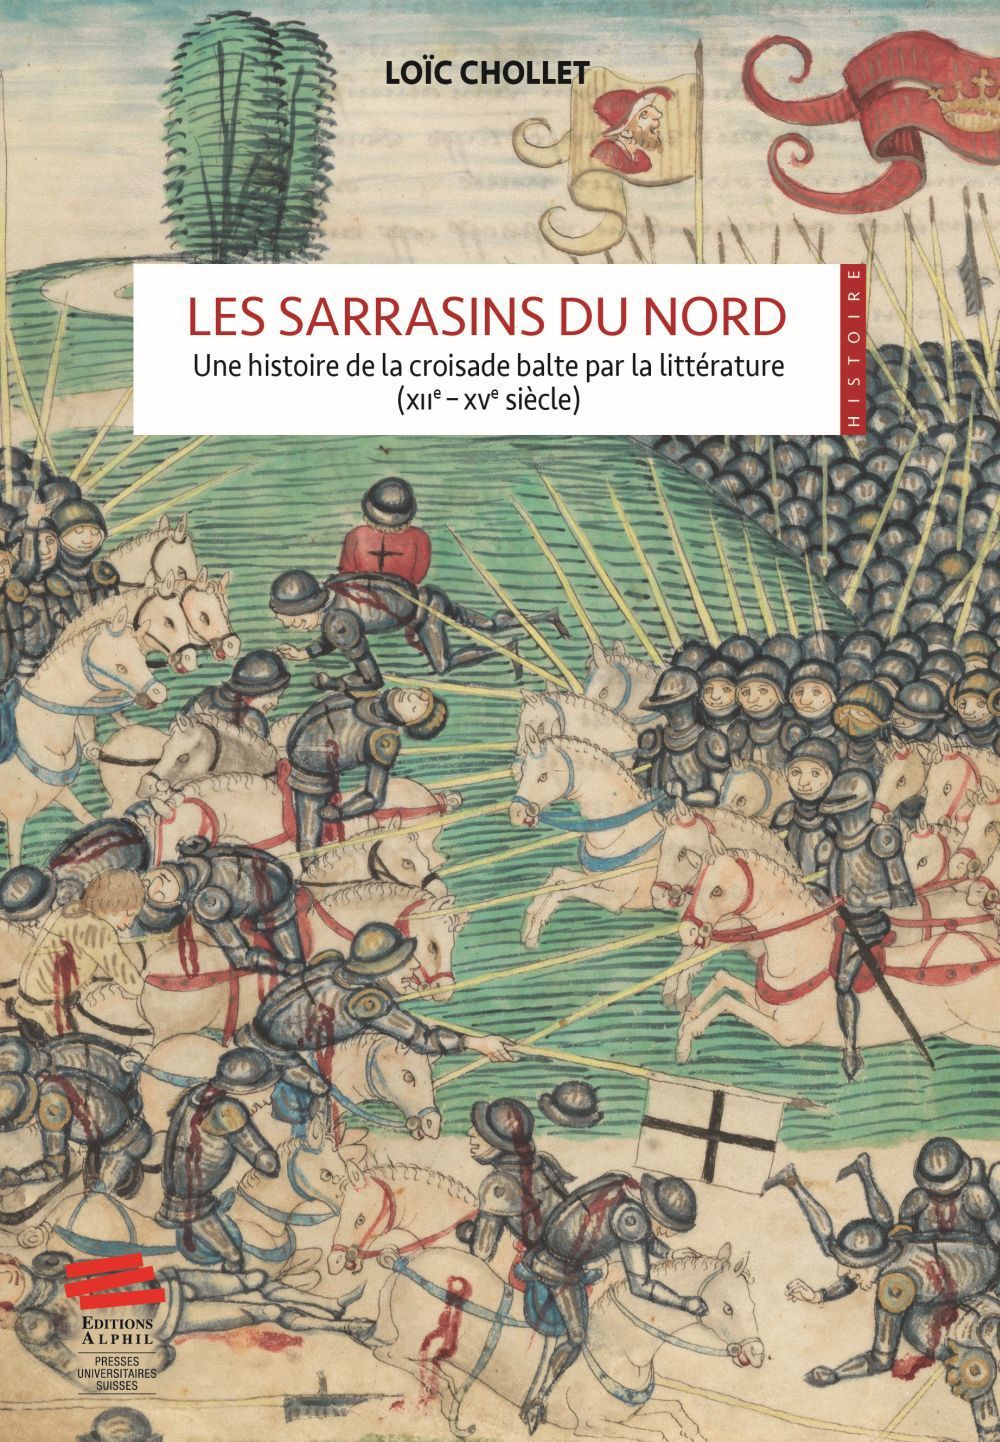 "En 1396, le sultan Bajazet 1er écrase une armée de croisés français, hongrois et valaques devant Nicopolis, sur le Danube", écrit Loïc Chollet.